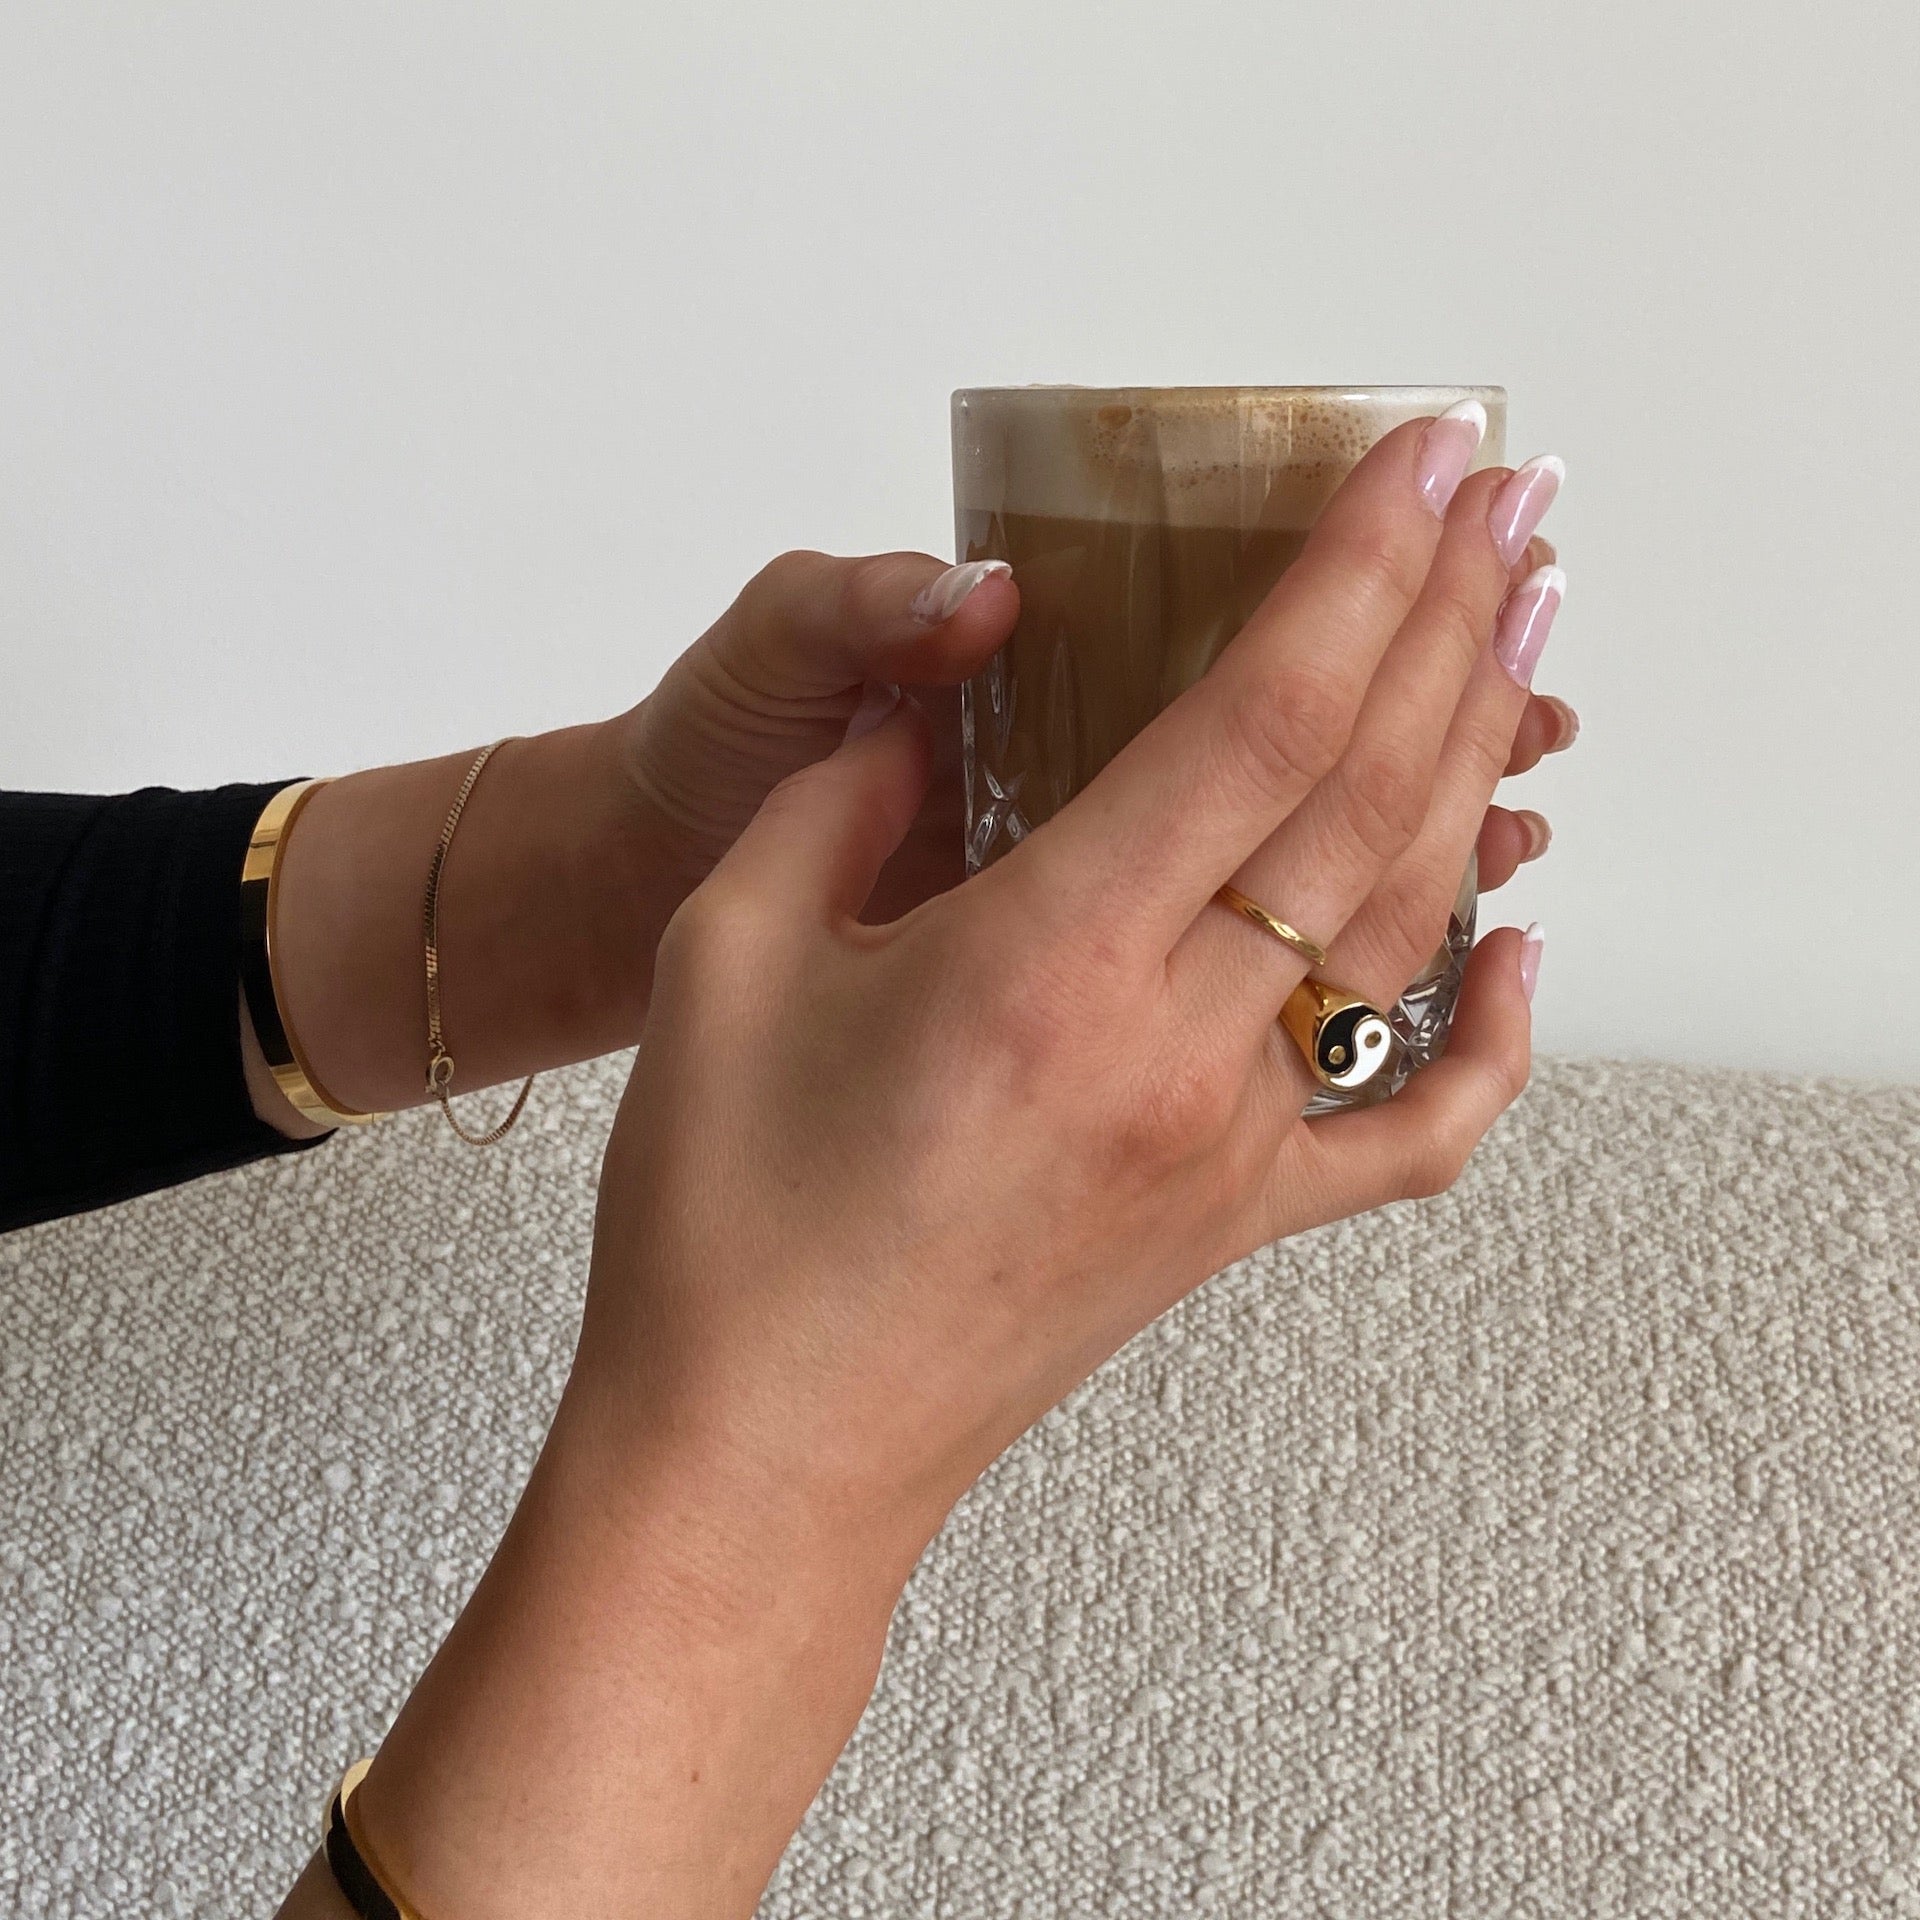 Yin Yang Ring in gold getragen von Frau, die einen Kaffee in der Hand hält